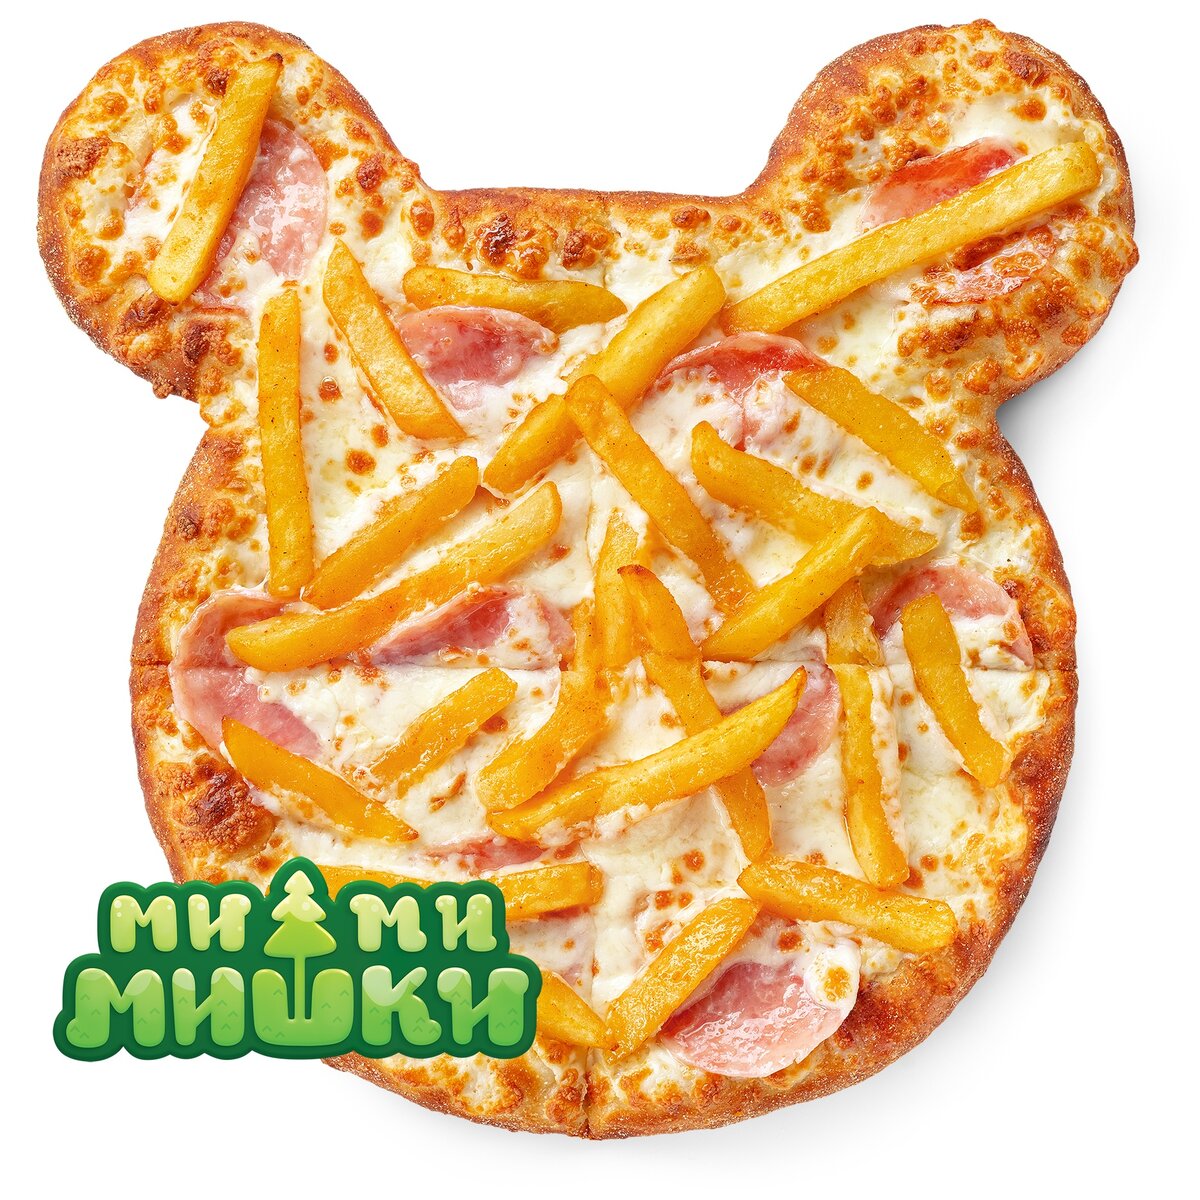 Пицца в виде мишки